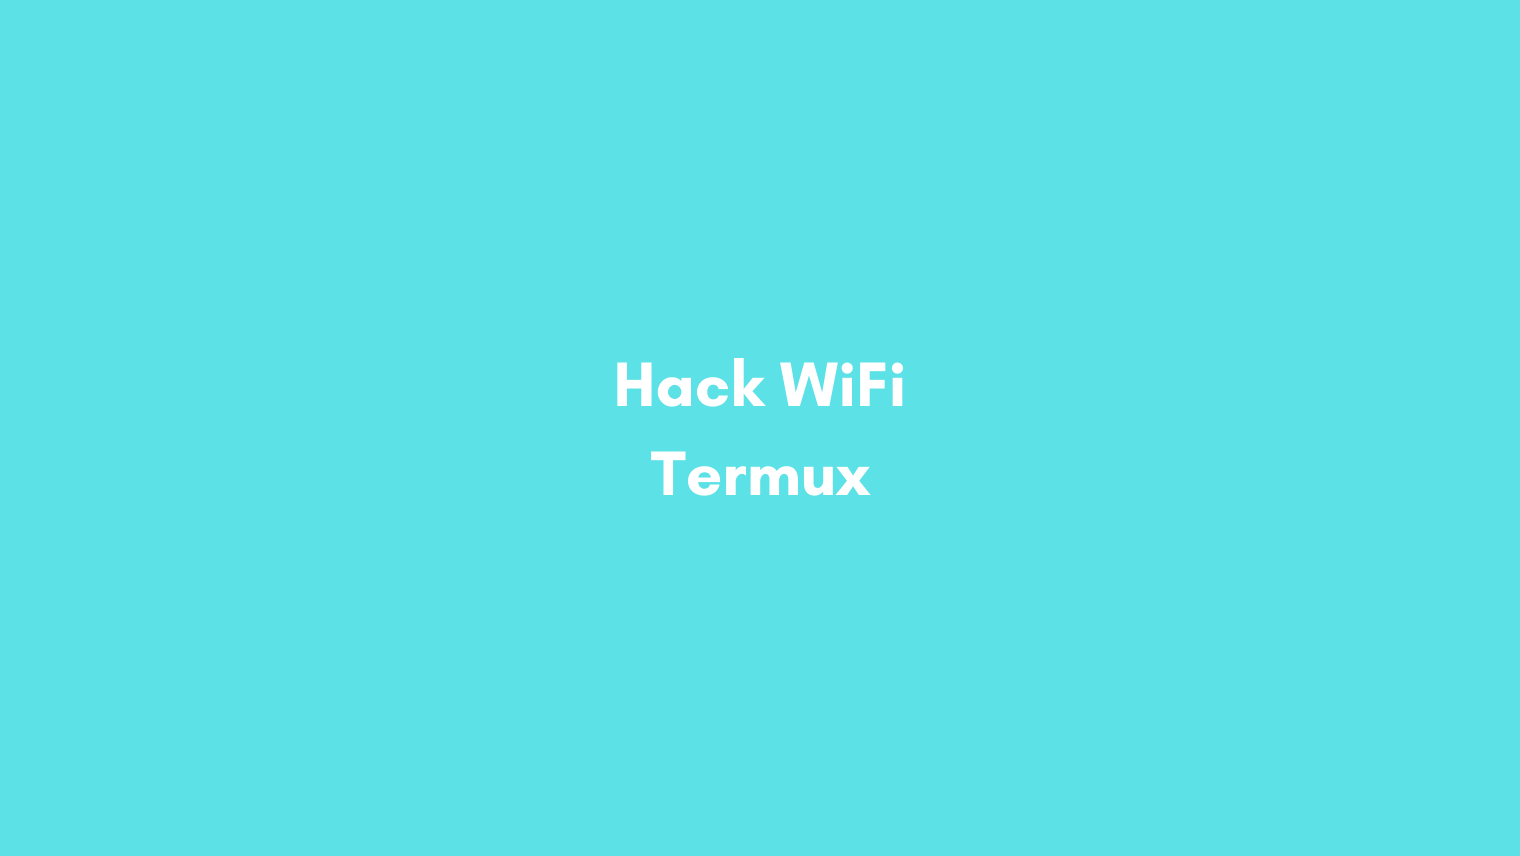 Hack Wifi Dengan Termux No Root. √ Tutorial Hack WiFi Termux No Root Terbaru 2021